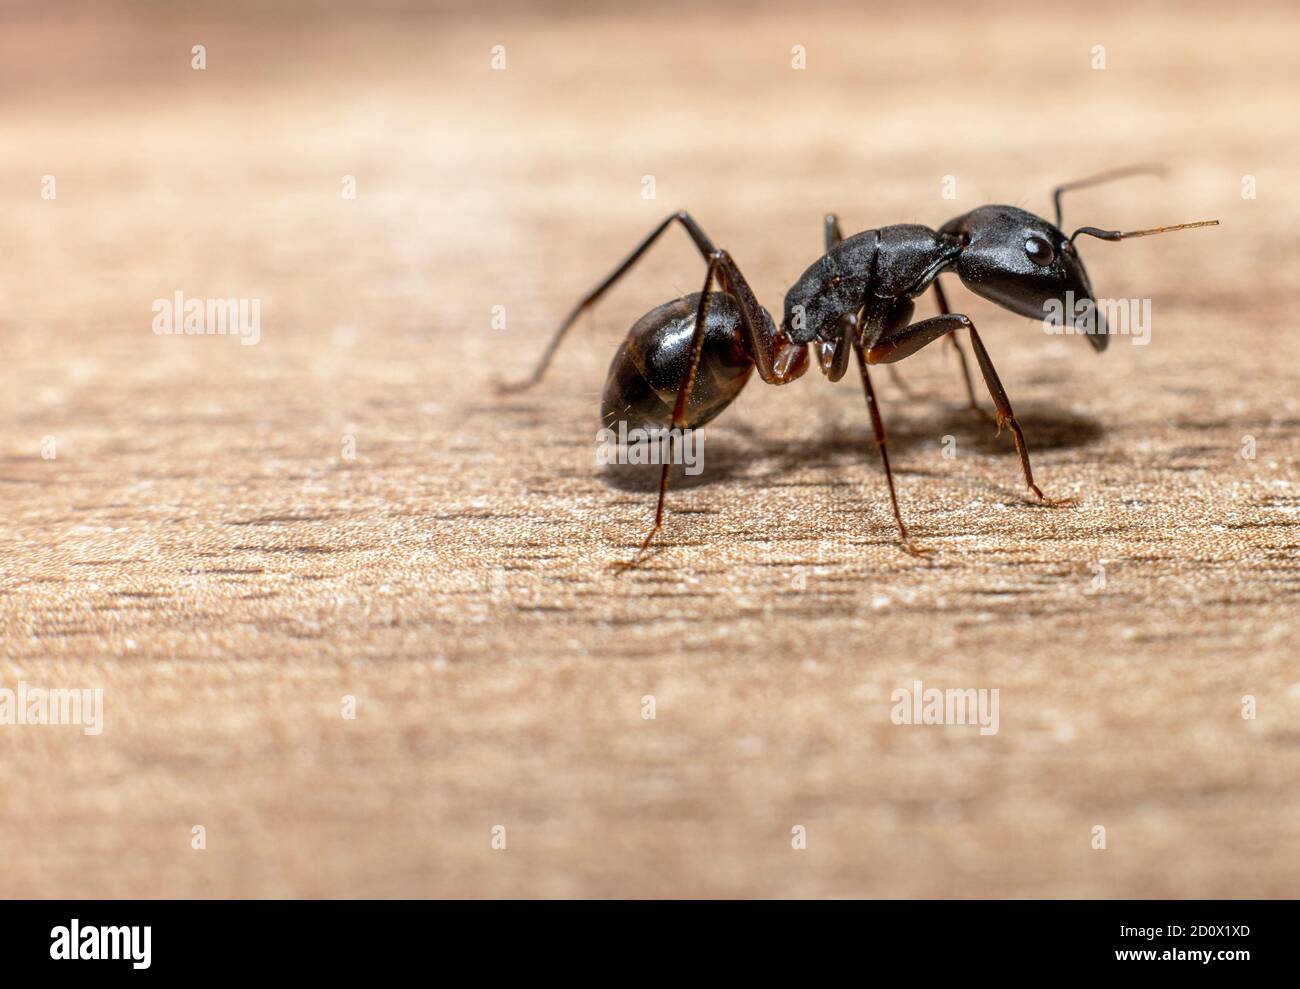 Camponotus xerxes, die riesige Schwarze Ameise in den Vereinigten Arabischen Emiraten Stockfoto